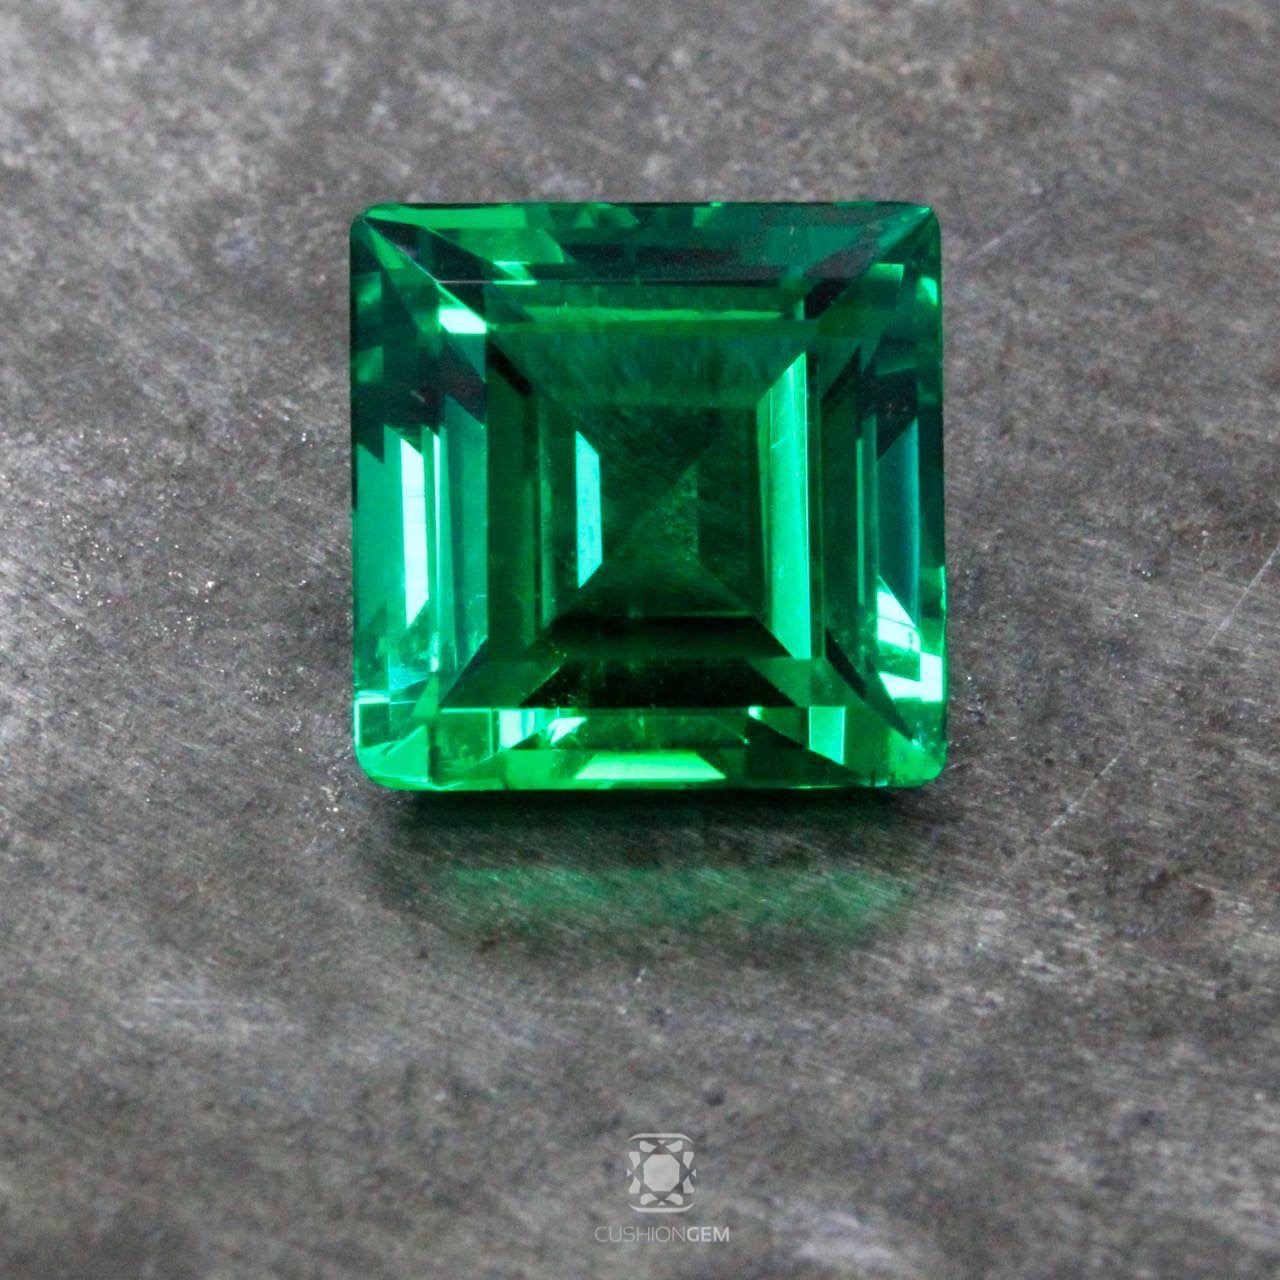 A 6+ carat un-treated old-mine emerald